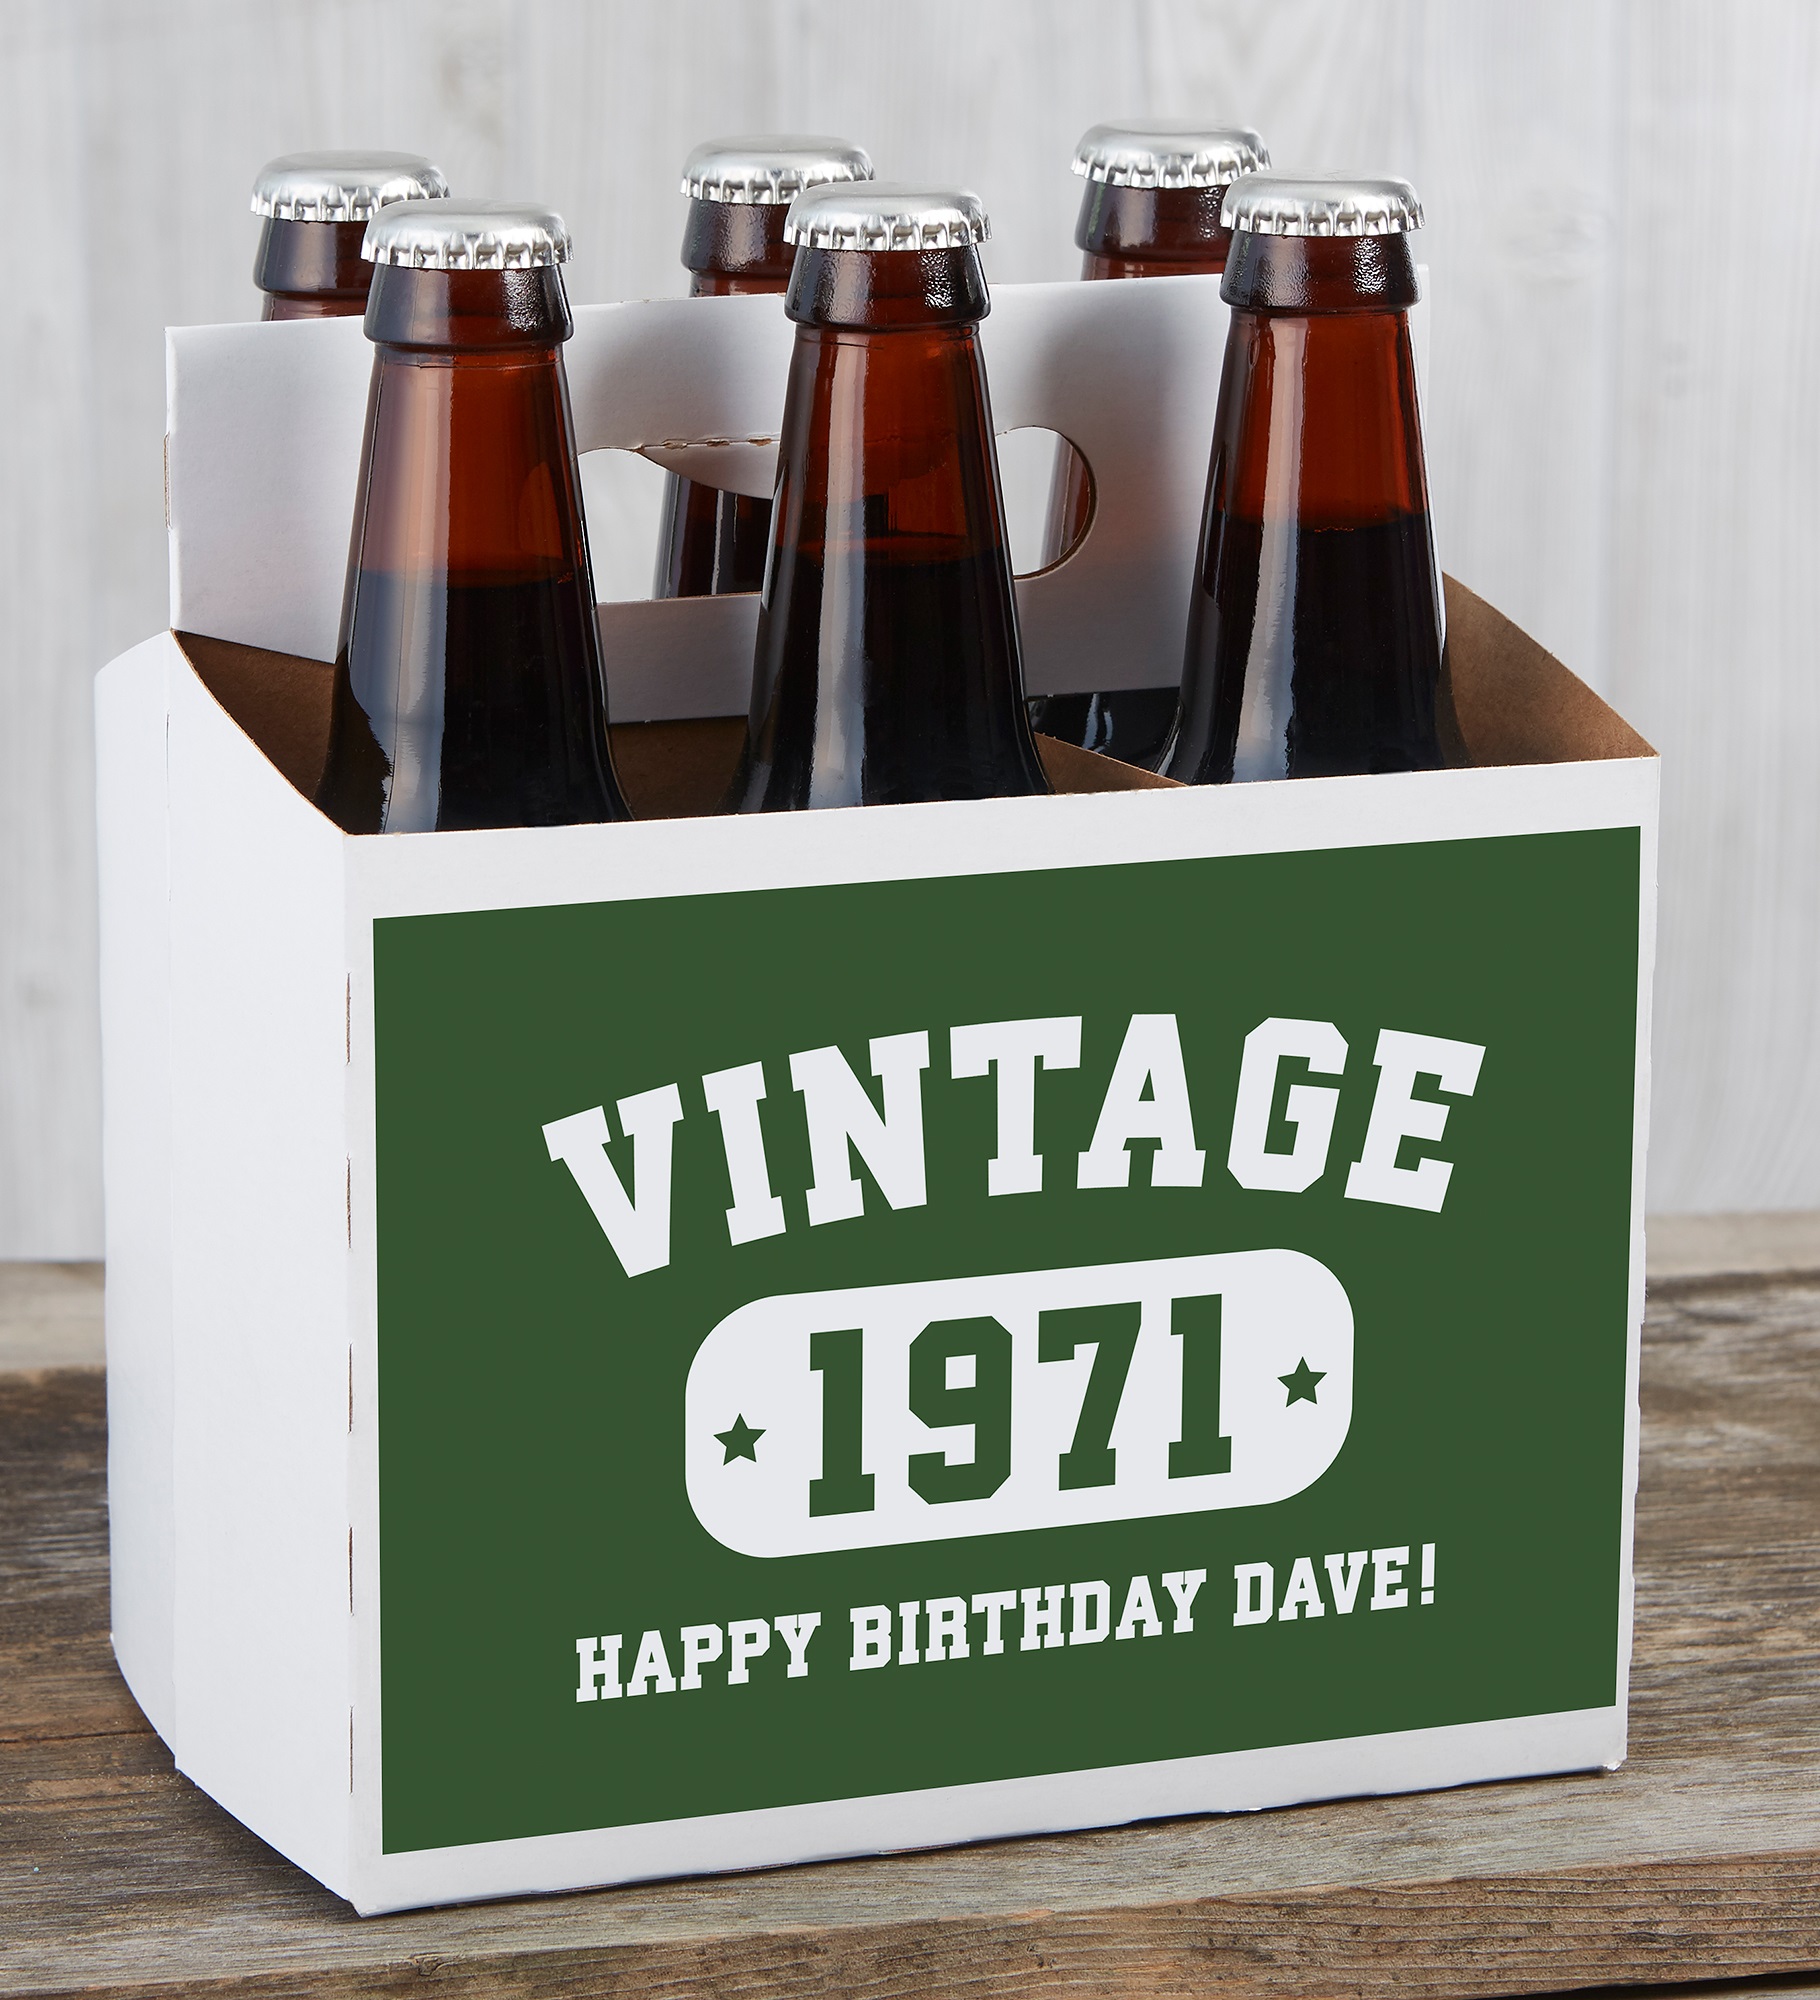 Vintage Birthday Personalized Beer Bottle Labels & Bottle Carrier